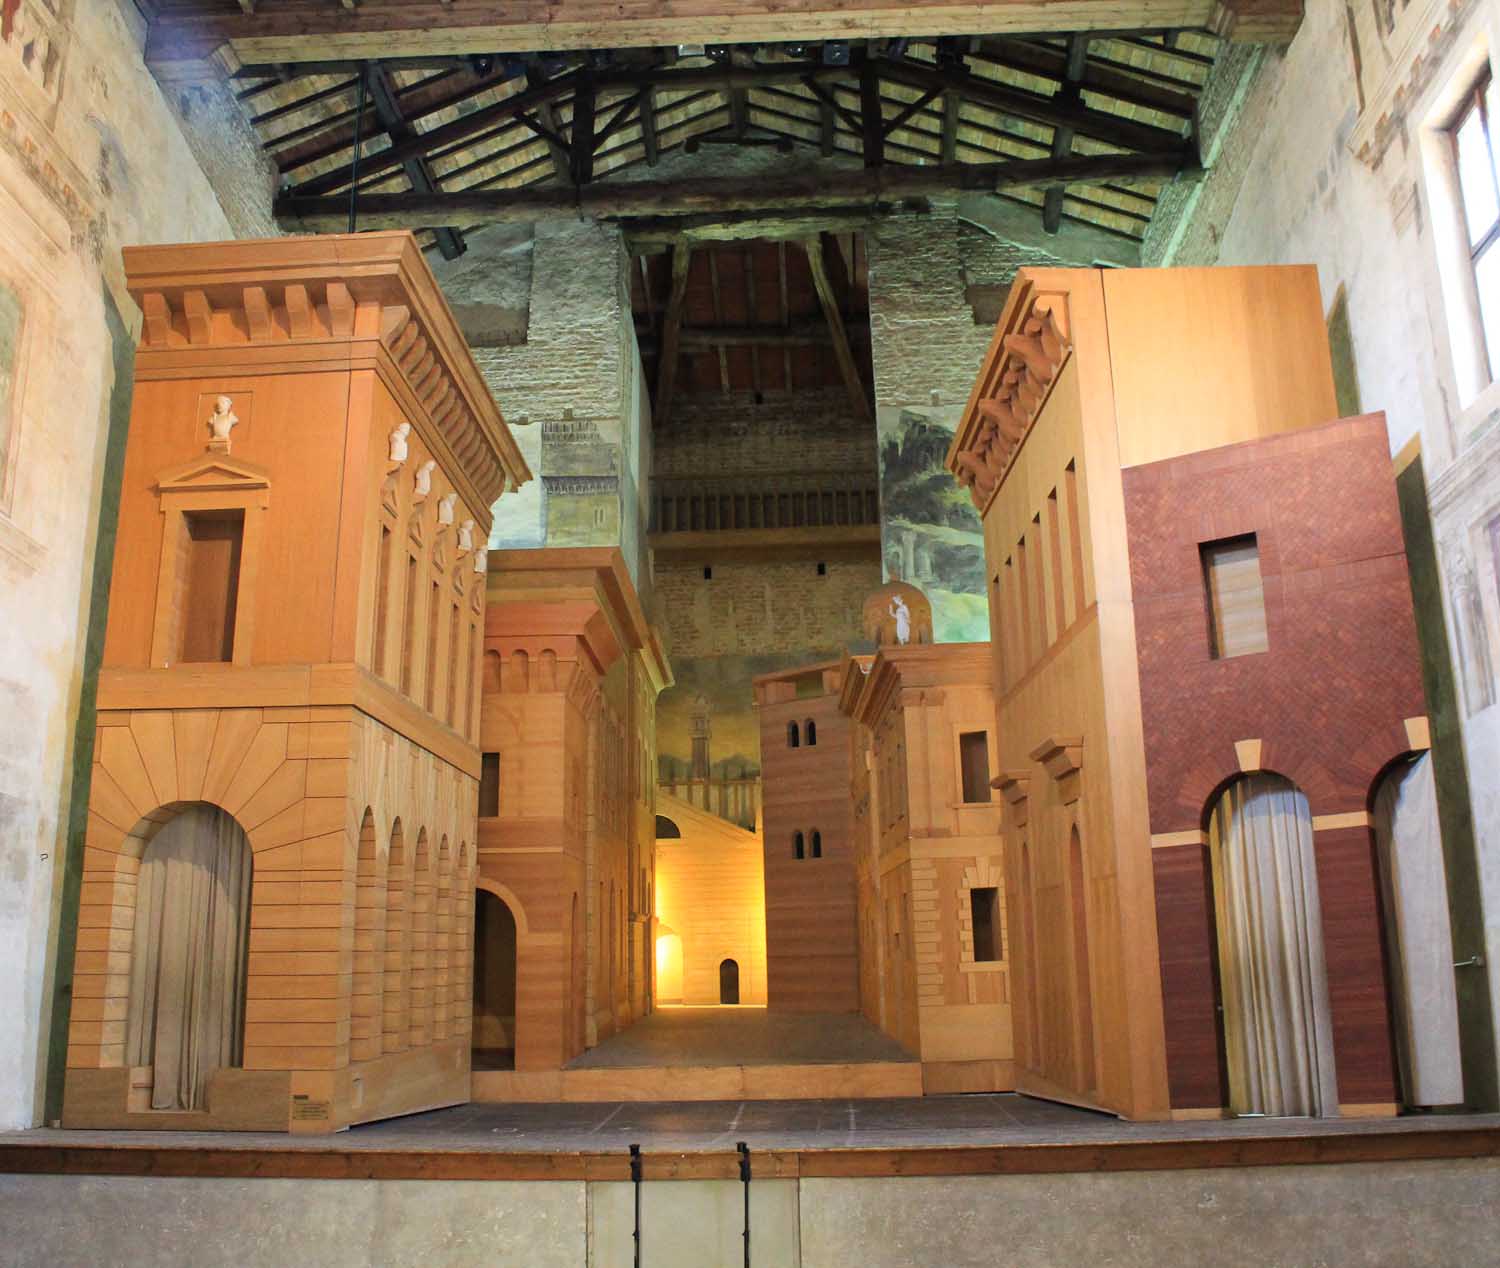 Teatro all'antica in Sabbioneta